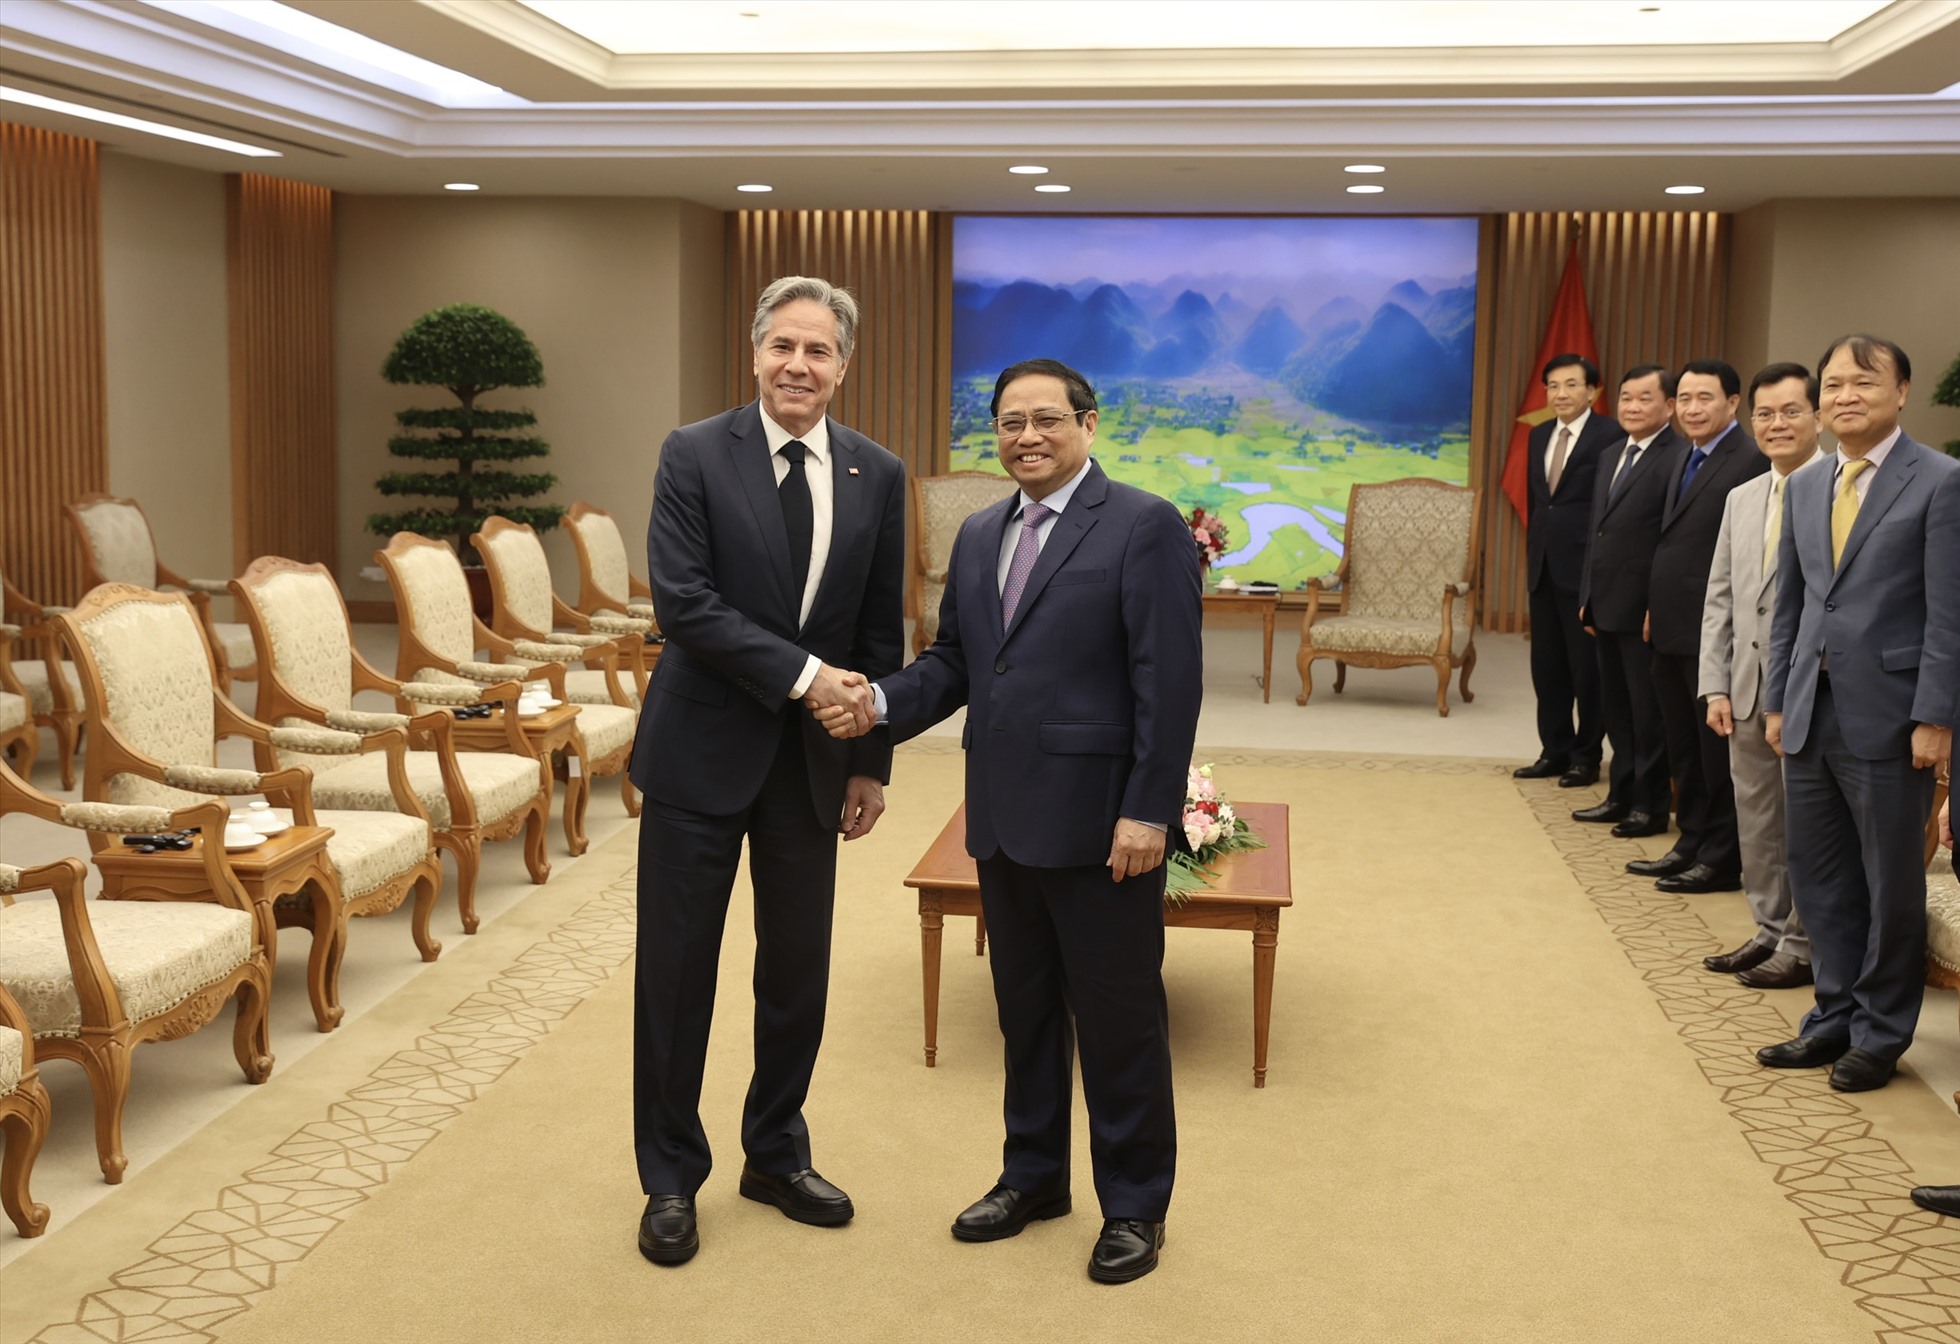 Ngoại trưởng Mỹ Antony Blinken đang ở thăm Việt Nam theo lời mời của Bộ trưởng Ngoại giao Bùi Thanh Sơn. Ảnh: Hải Nguyễn